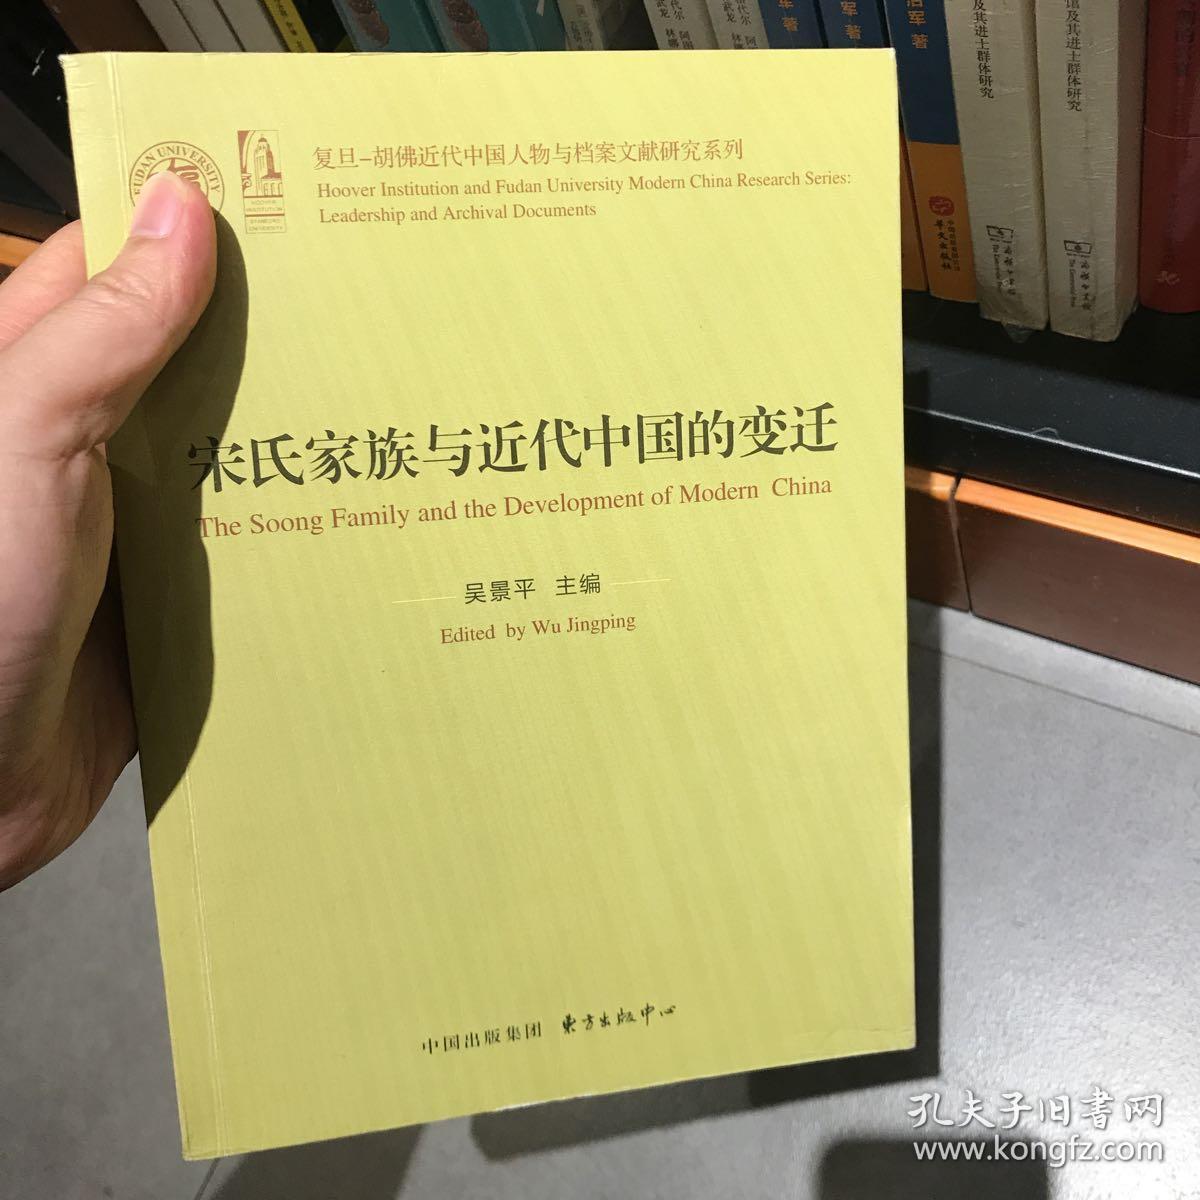 宋氏家族与近代中国的变迁/复旦-胡佛近代中国人物与档案研究系列